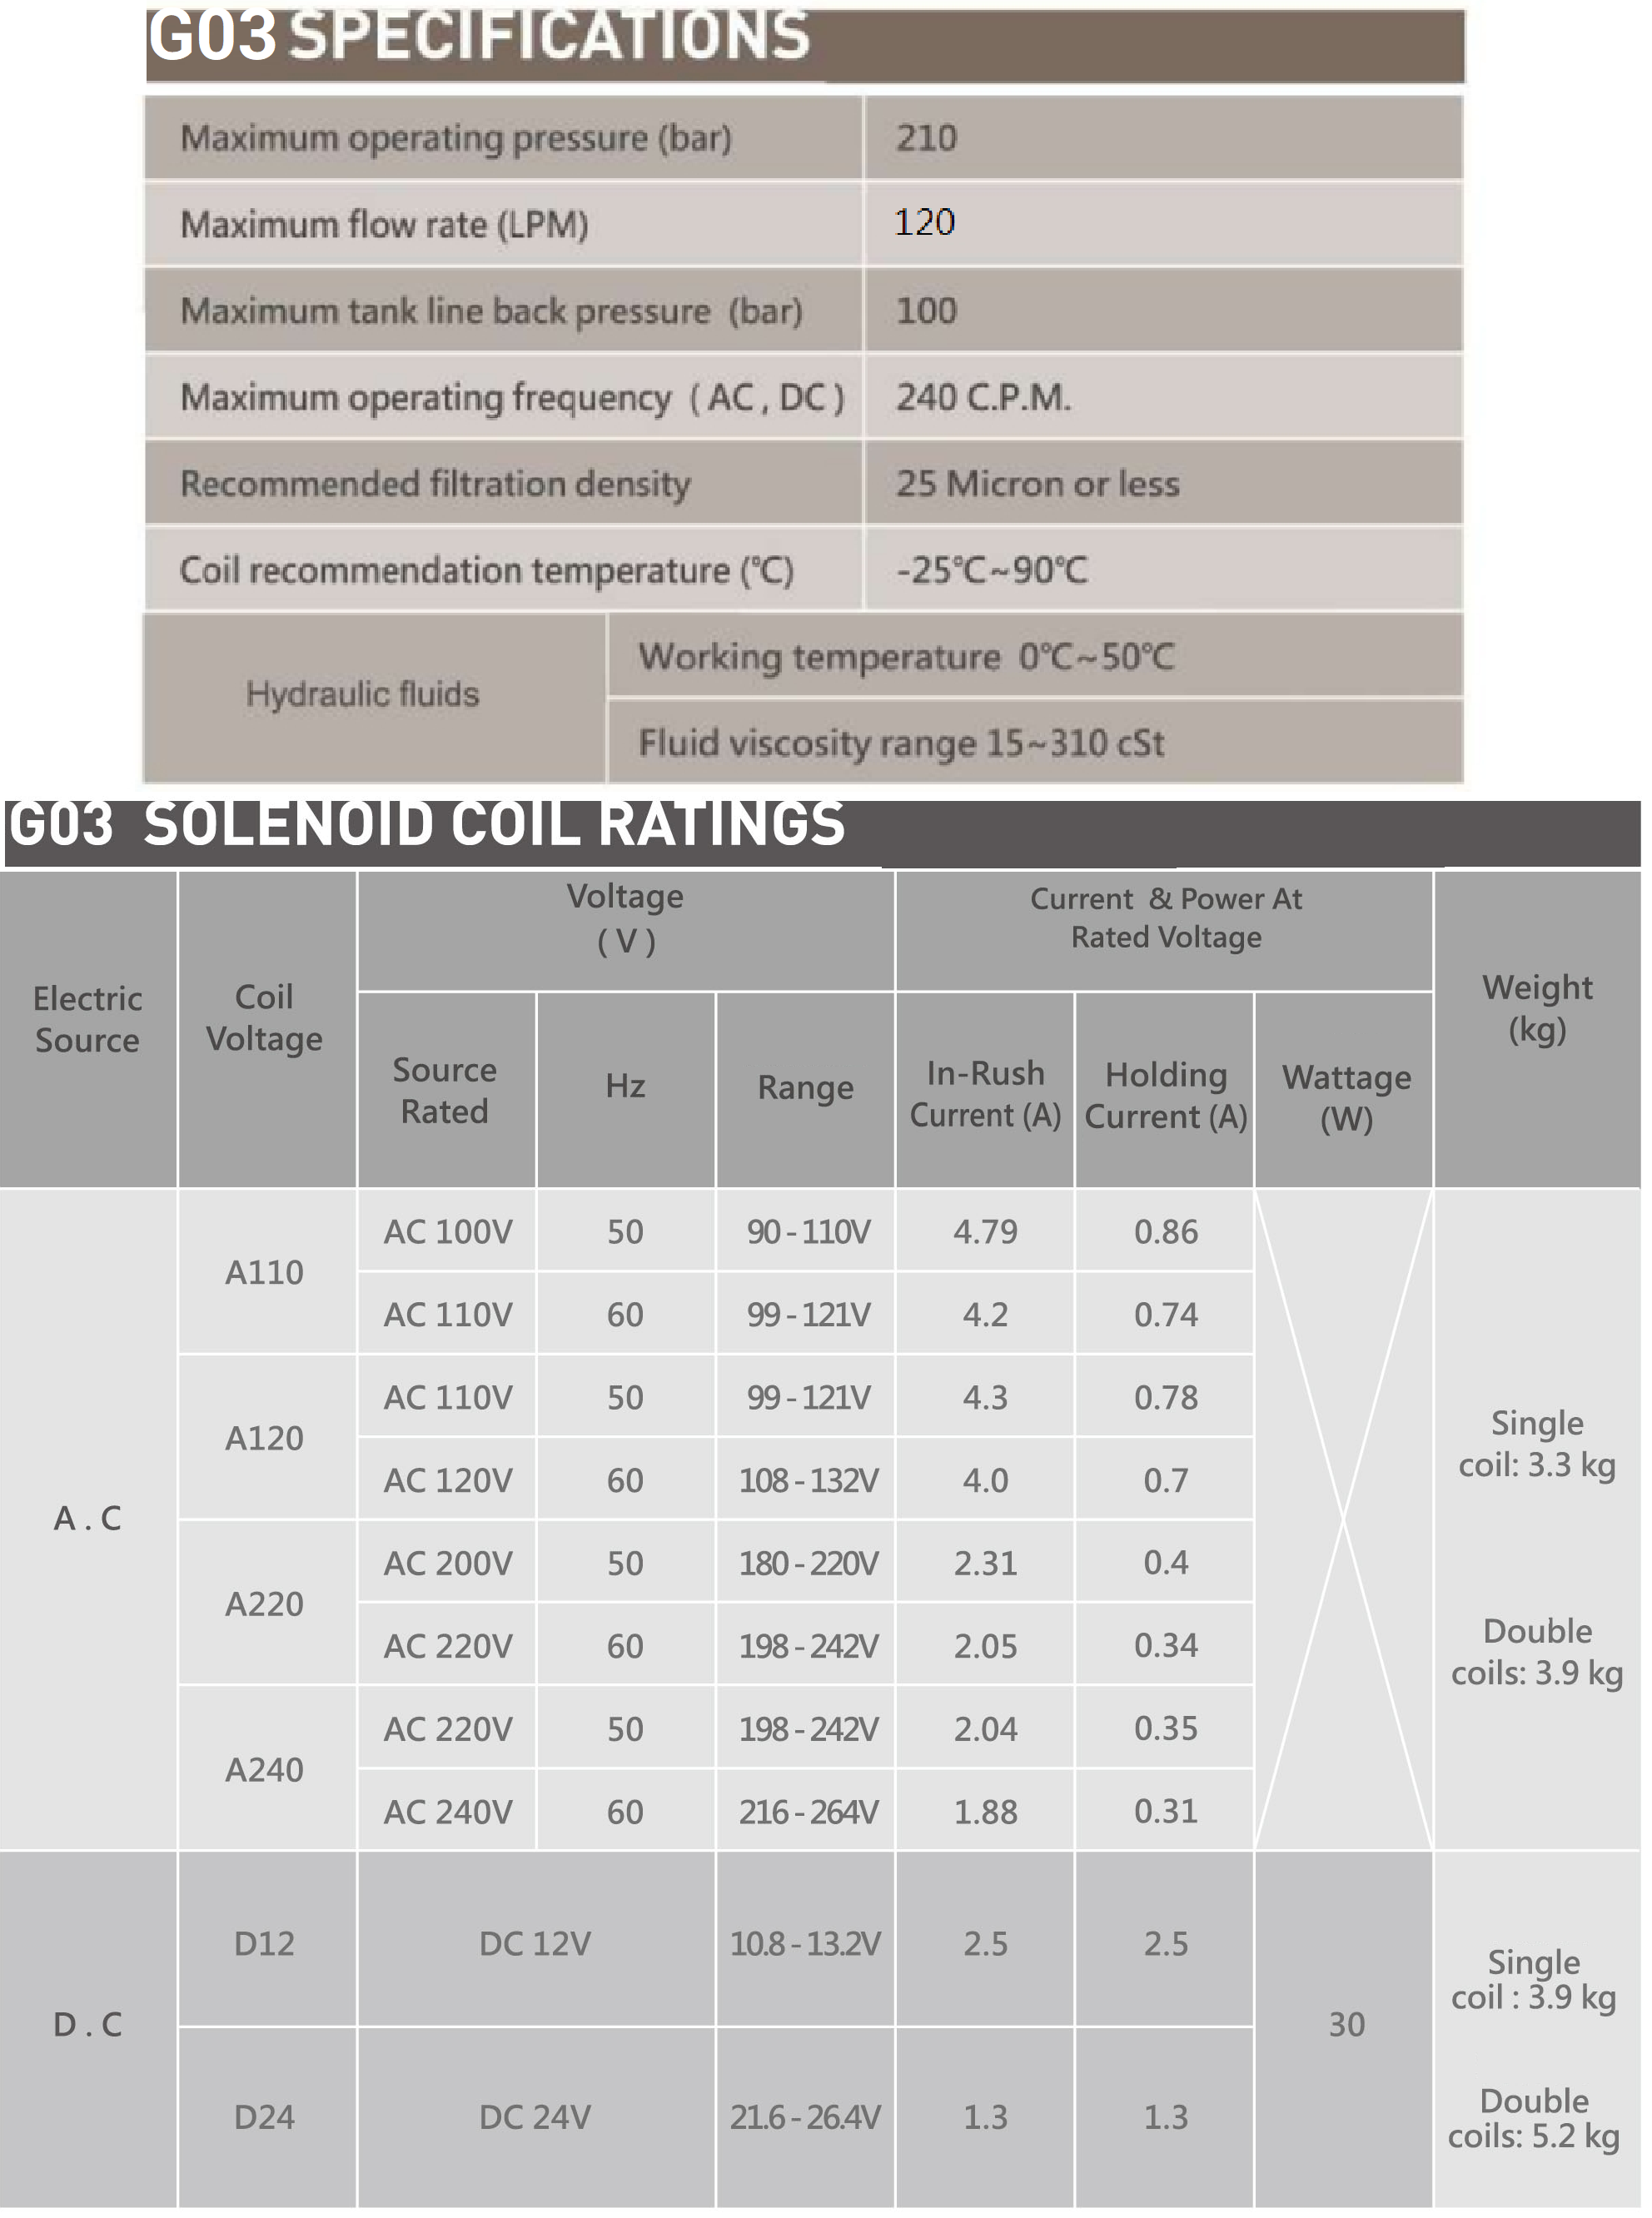 CML Клапан соленоидный высокого расхода типа WH. Рейтинг соленоида G02